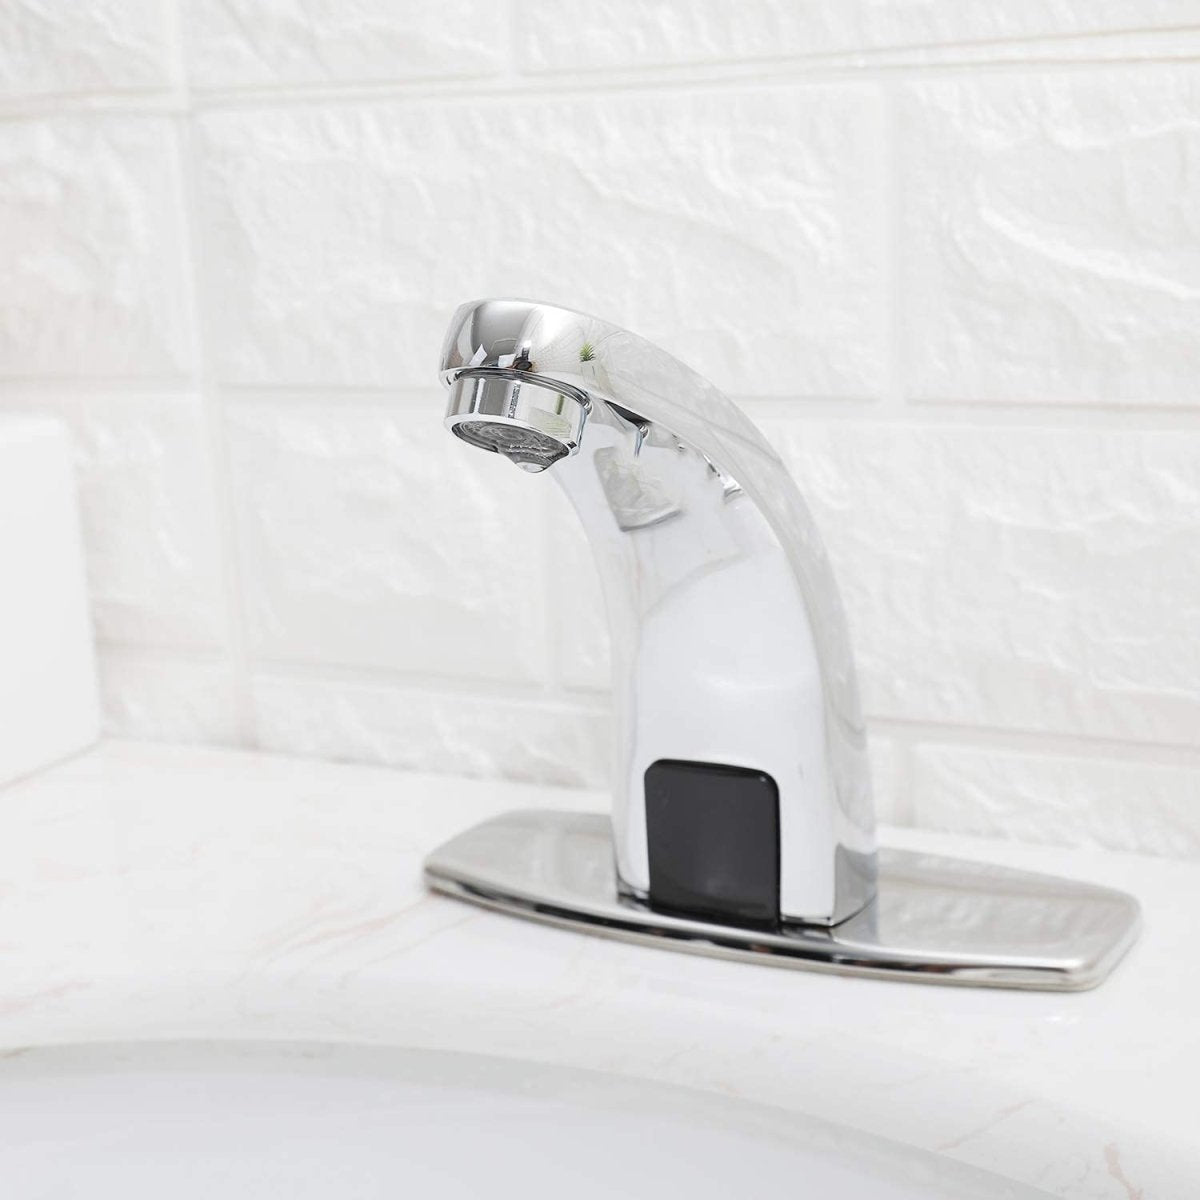 Automatic Sensor Touchless Bathroom Sink Faucet Chrome - buyfaucet.com